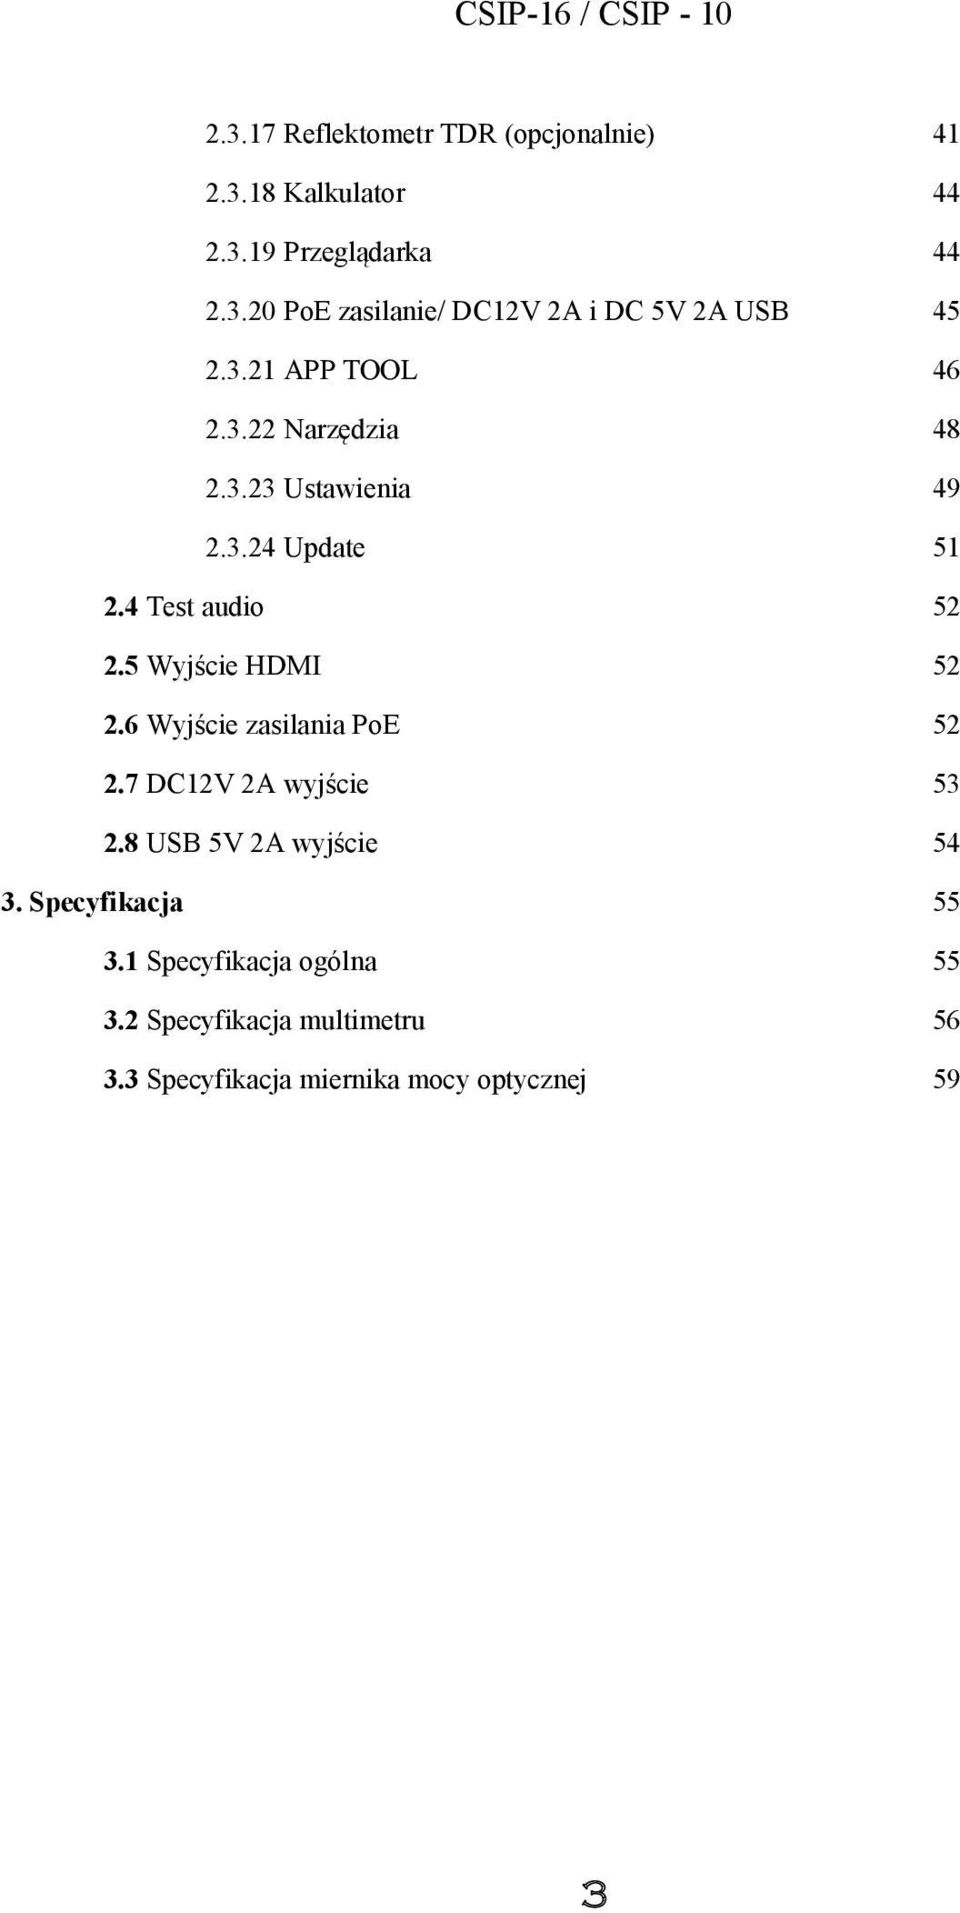 5 Wyjście HDMI 52 2.6 Wyjście zasilania PoE 52 2.7 DC12V 2A wyjście 53 2.8 USB 5V 2A wyjście 54 3.